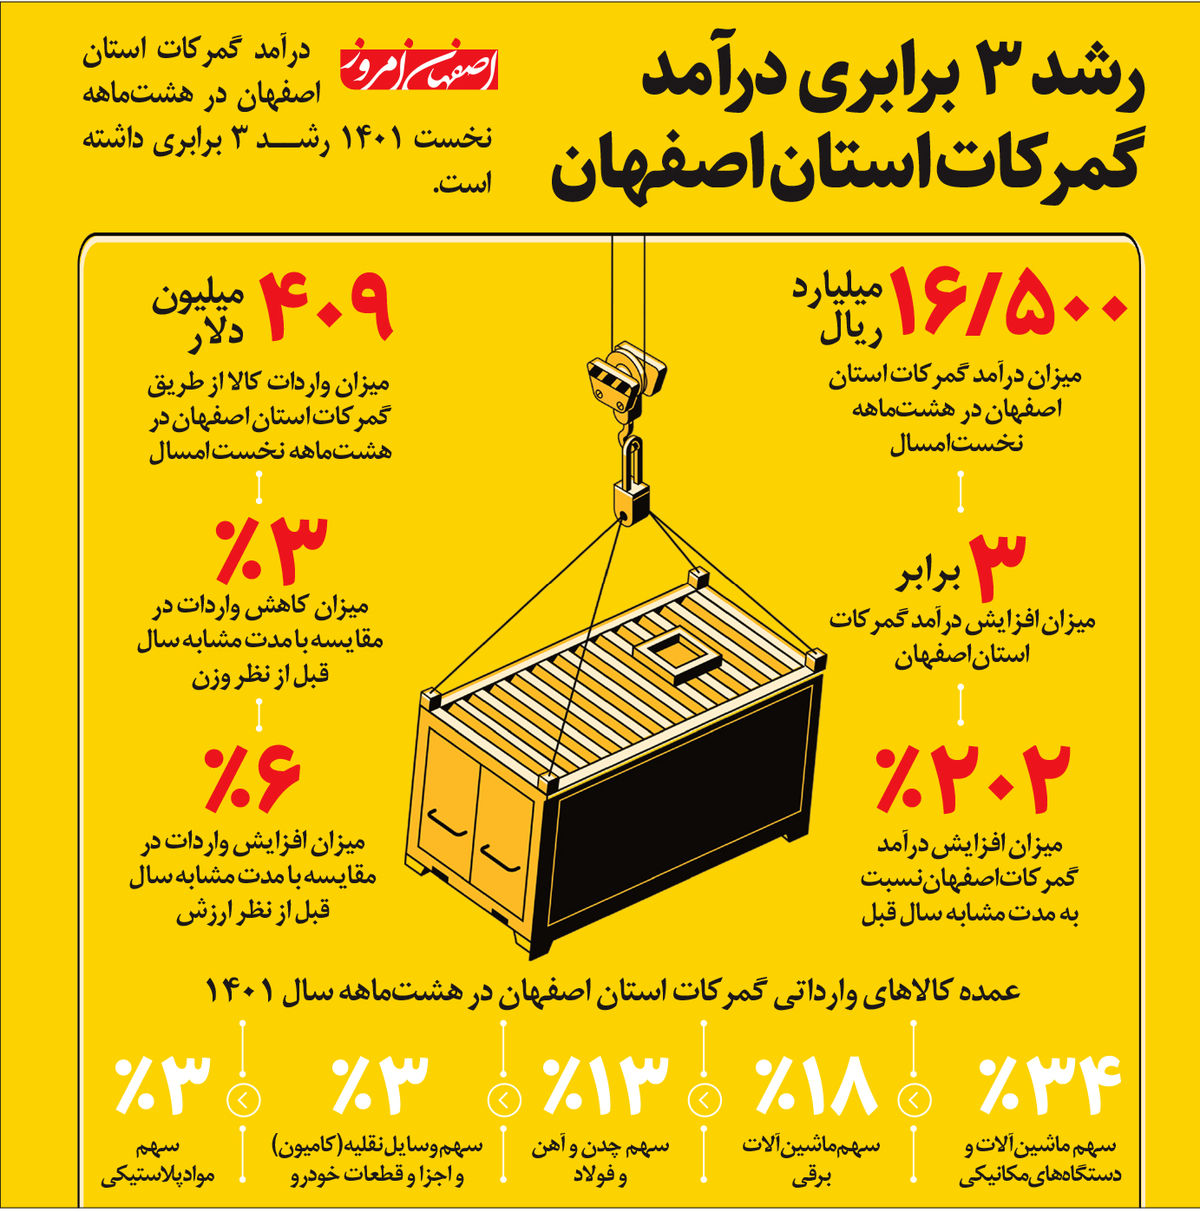 رشد ۳ برابری درآمد گمرکات استان اصفهان